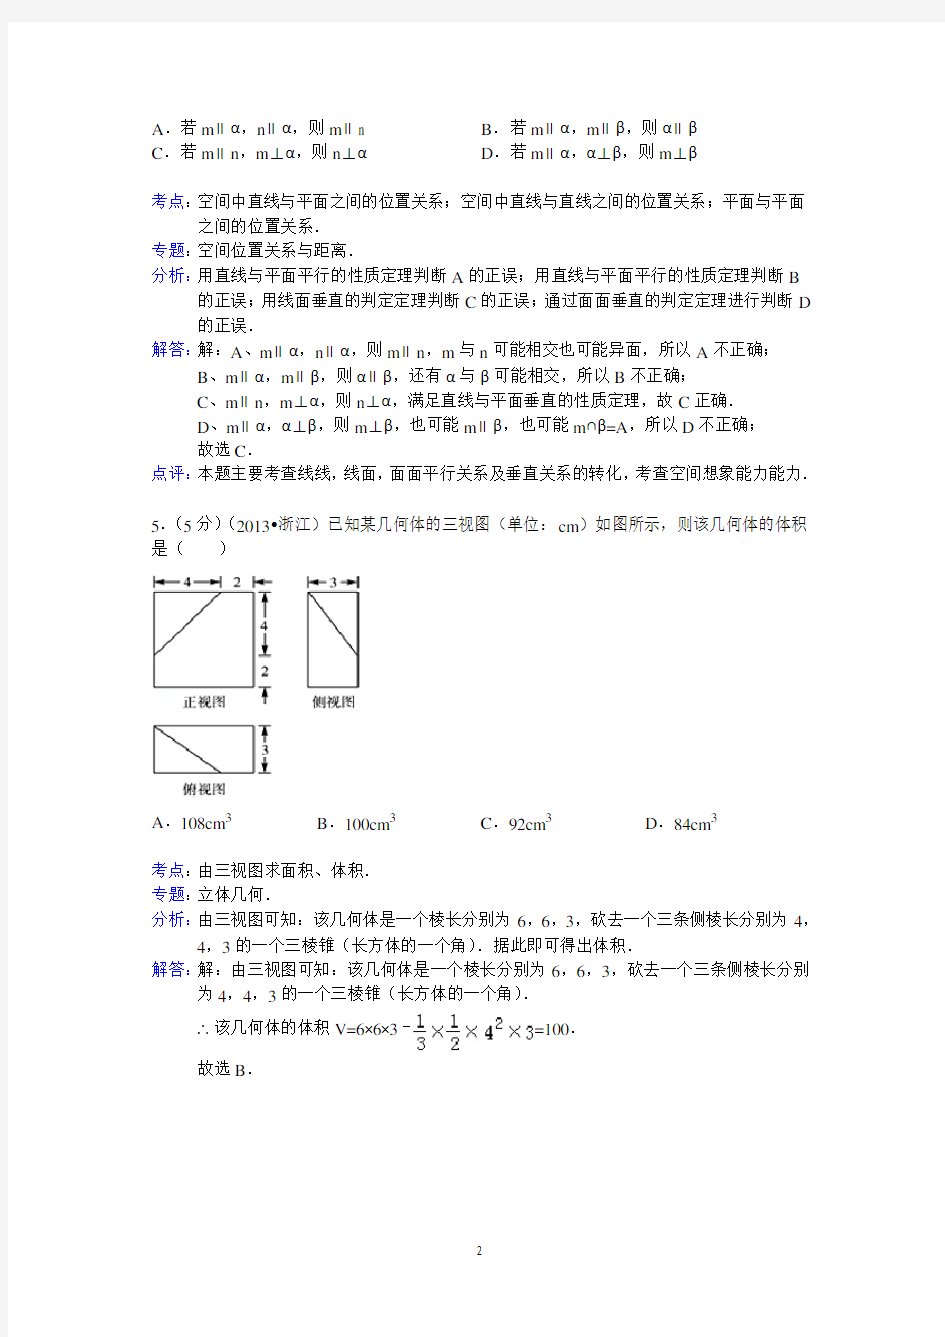 2013年浙江省高考数学试卷(文科)答案与解析